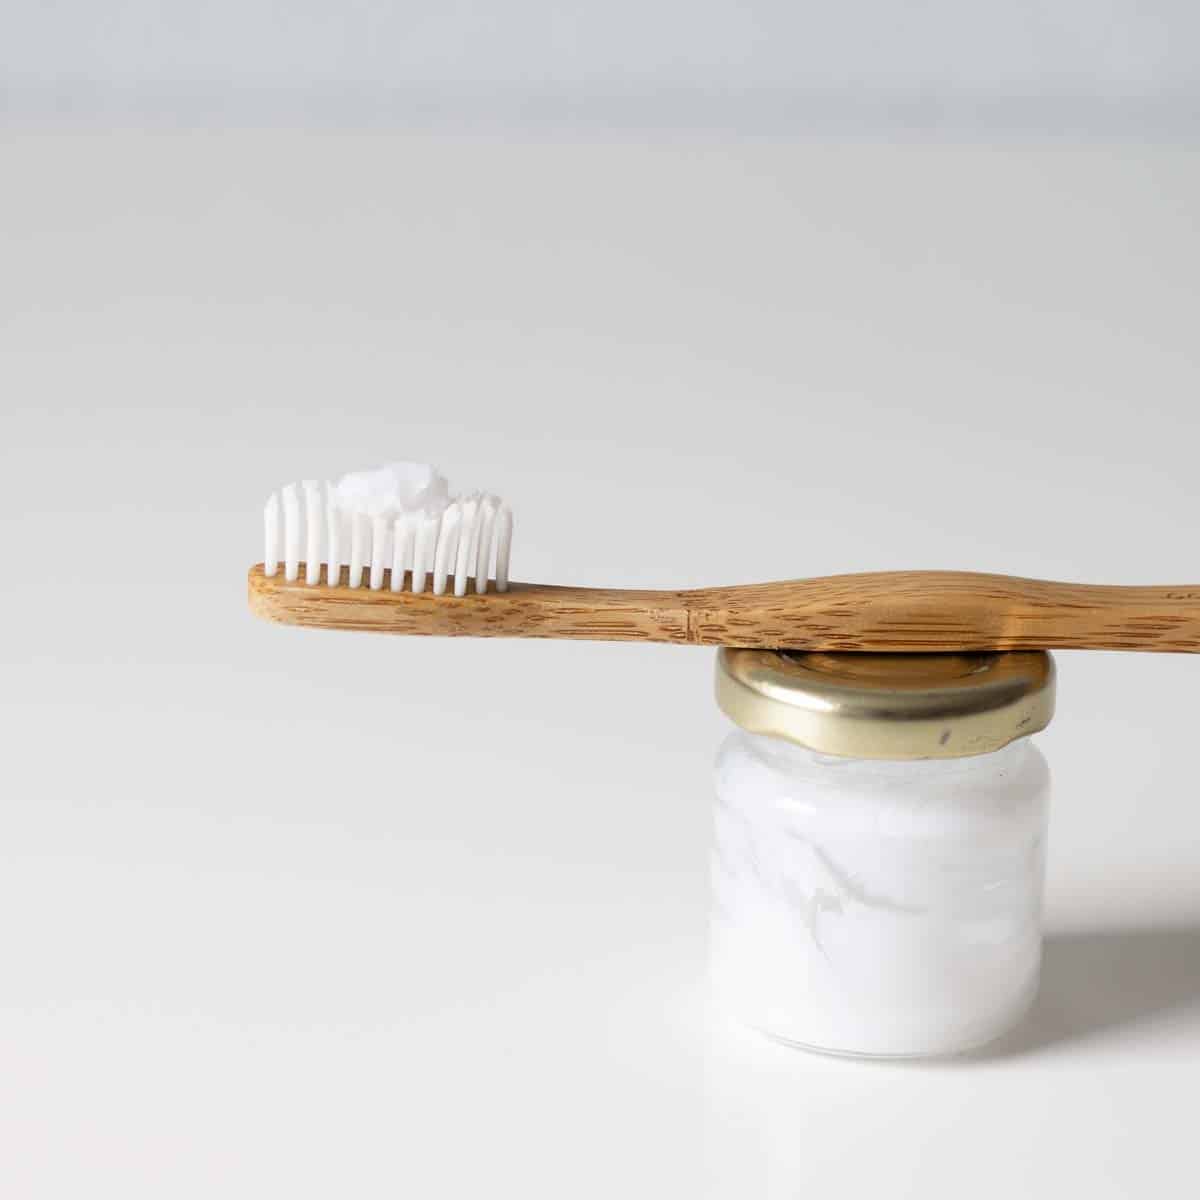 Bambuszahnbürste mit einem Klacks selbstgemachter Zahnpasta auf den Bürsten